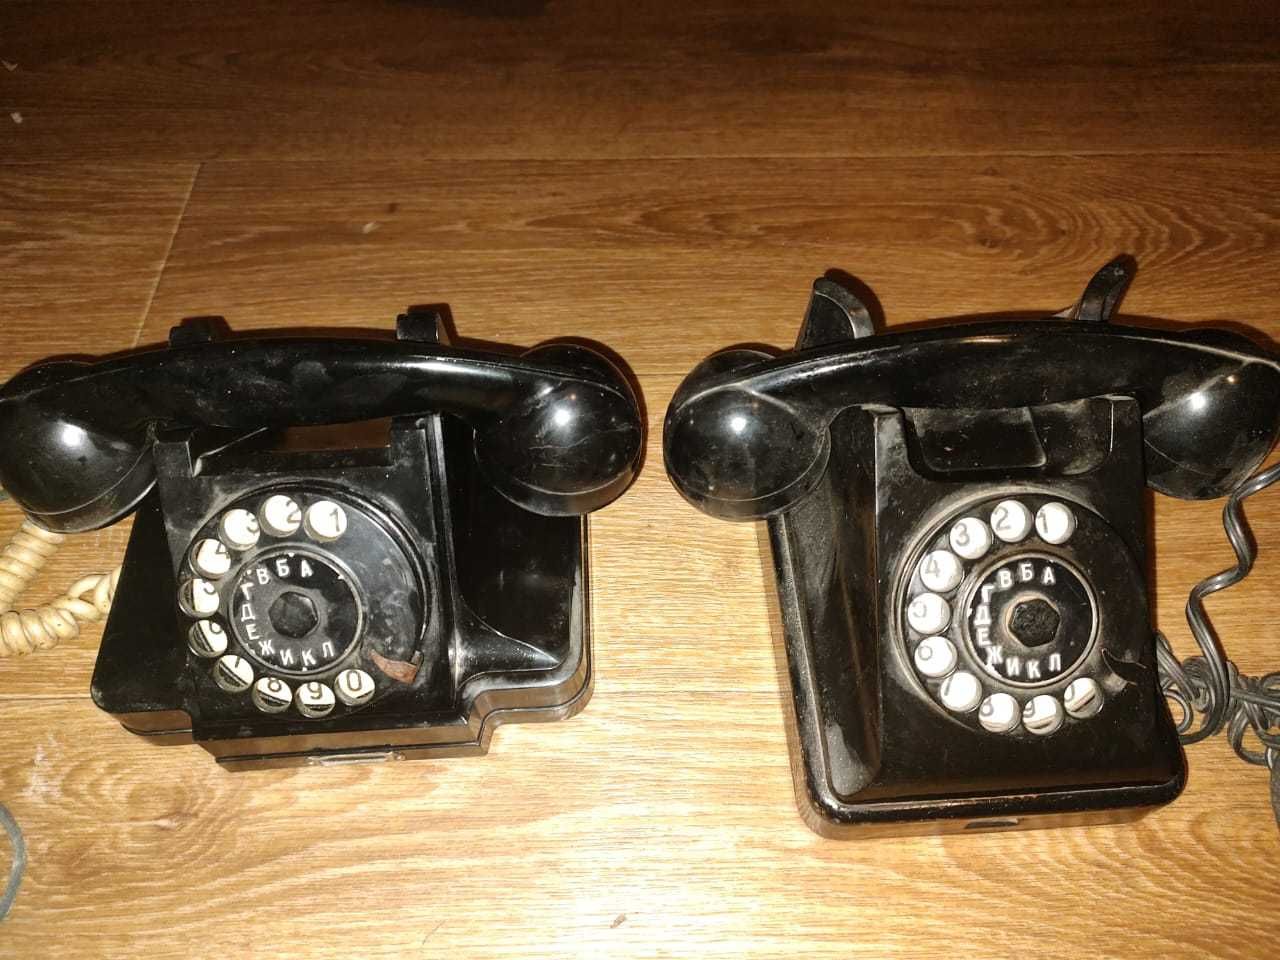 Старинные ретро телефоны 50 - 60 годов